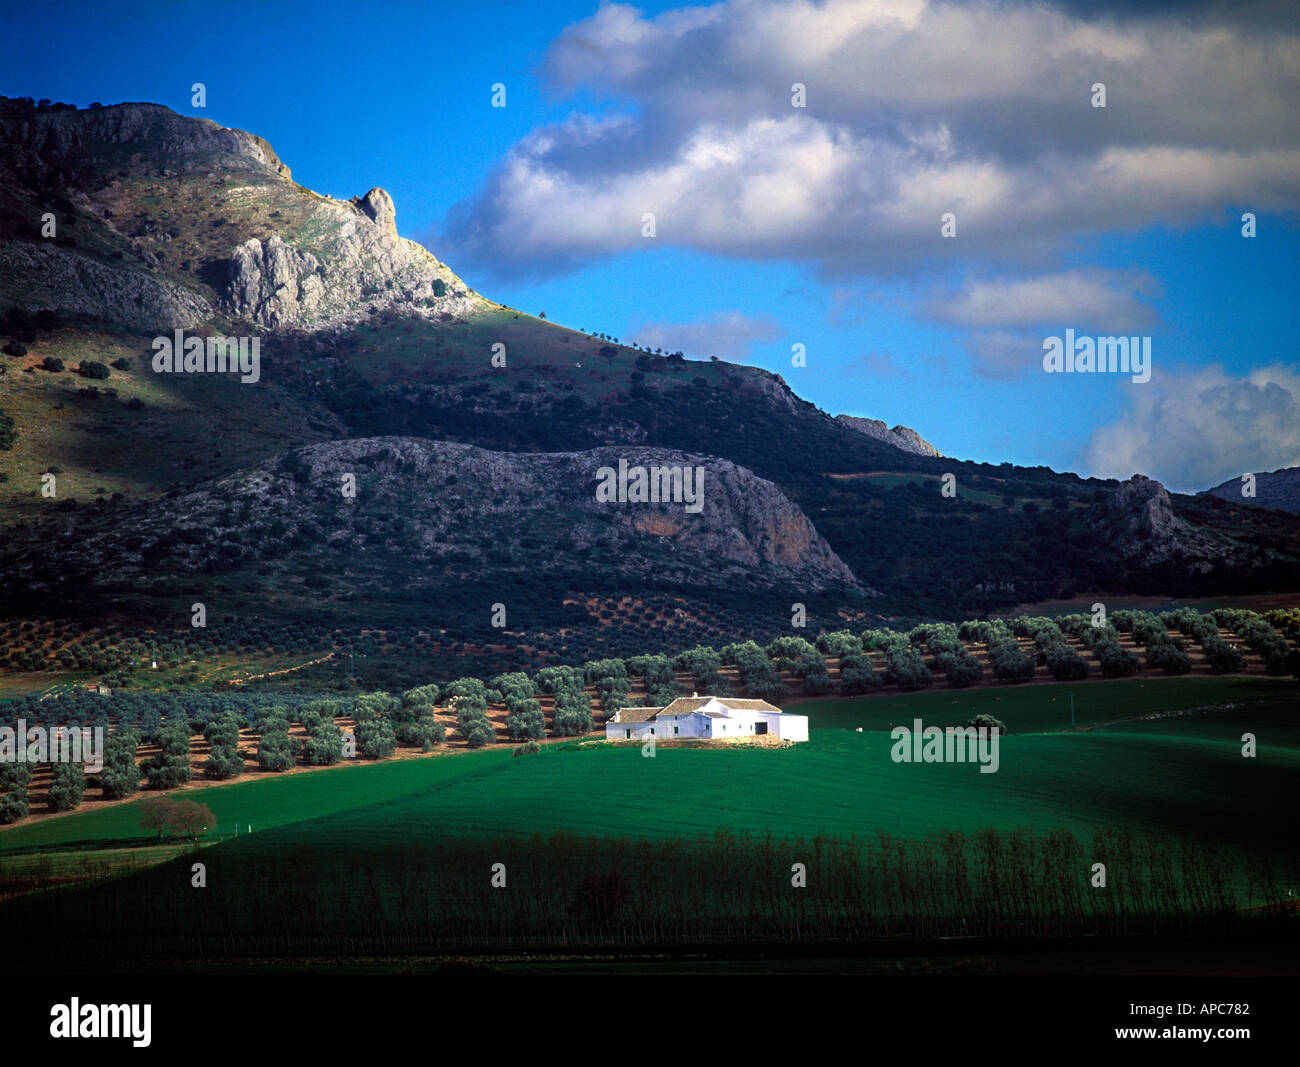 Finca maison de ferme sur hill montagnes en arrière-plan, près de grenade espagne andalousie Banque D'Images